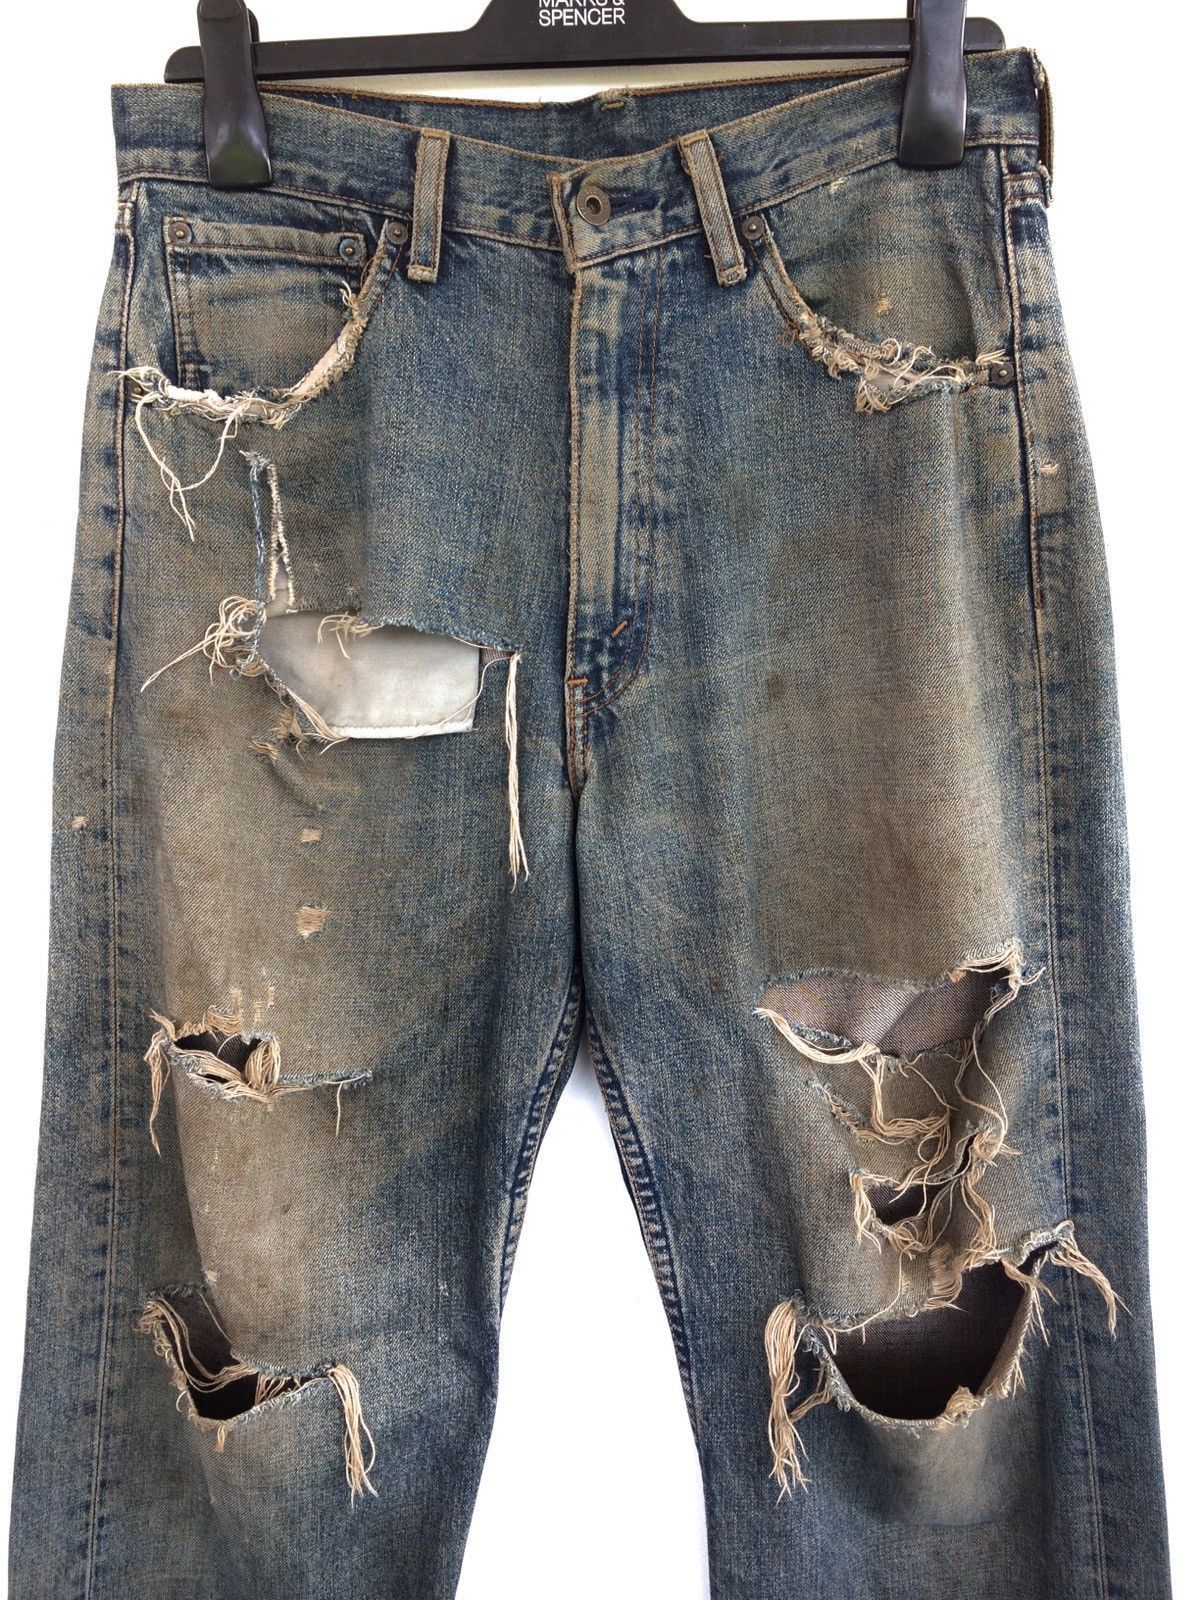 Vintage Levis Distressed Kurt Cobain Fashion Style Denim Pant Size US 31 - 2 Preview